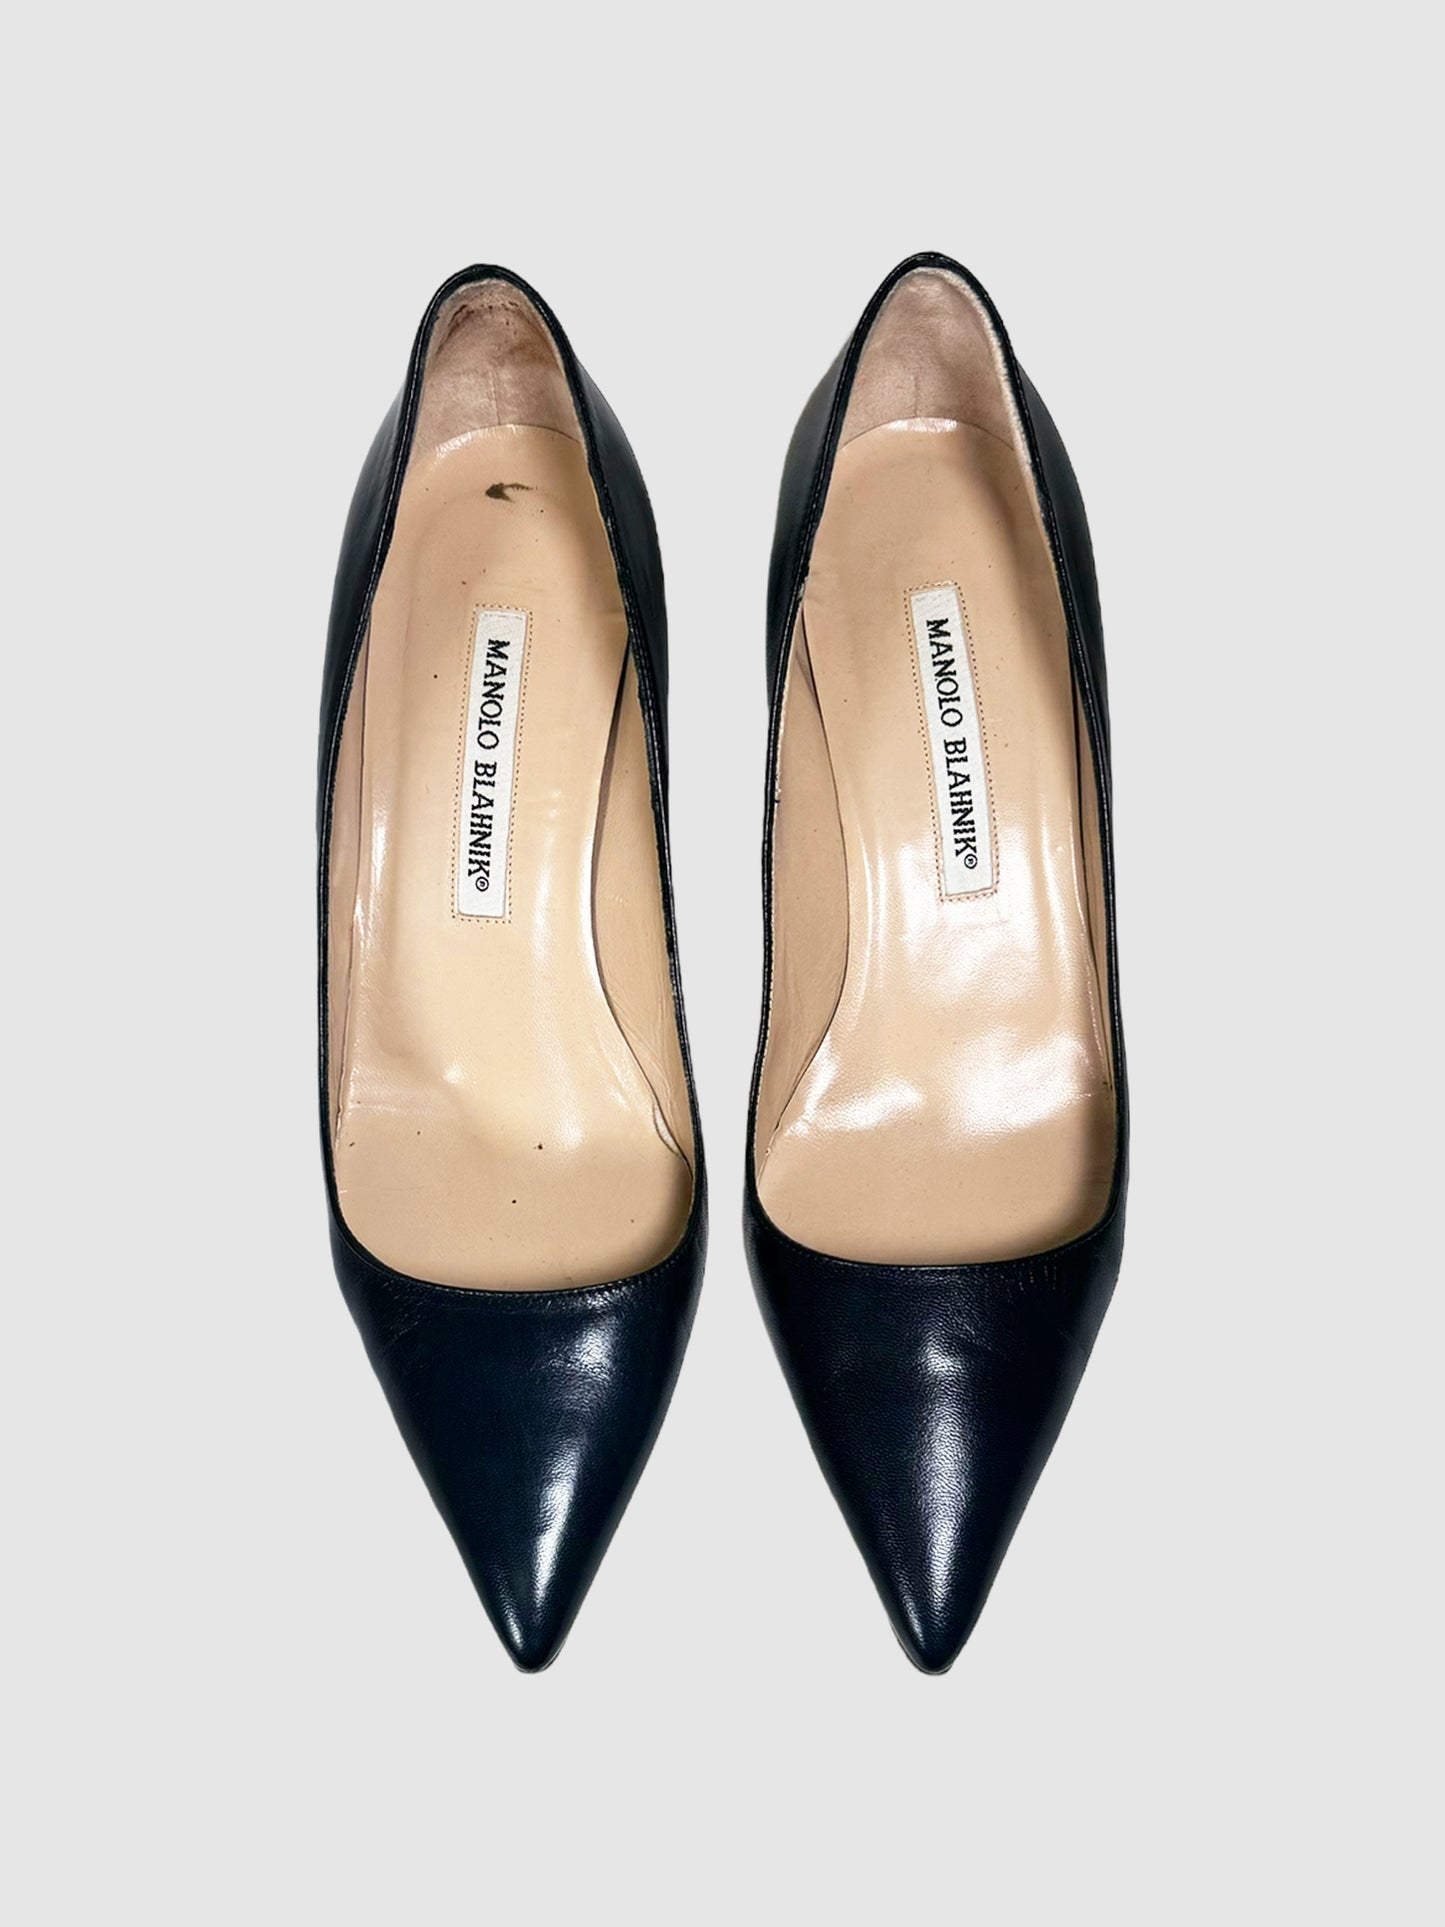 Manolo Blahnik Leather Kitten Heels - Size 37.5